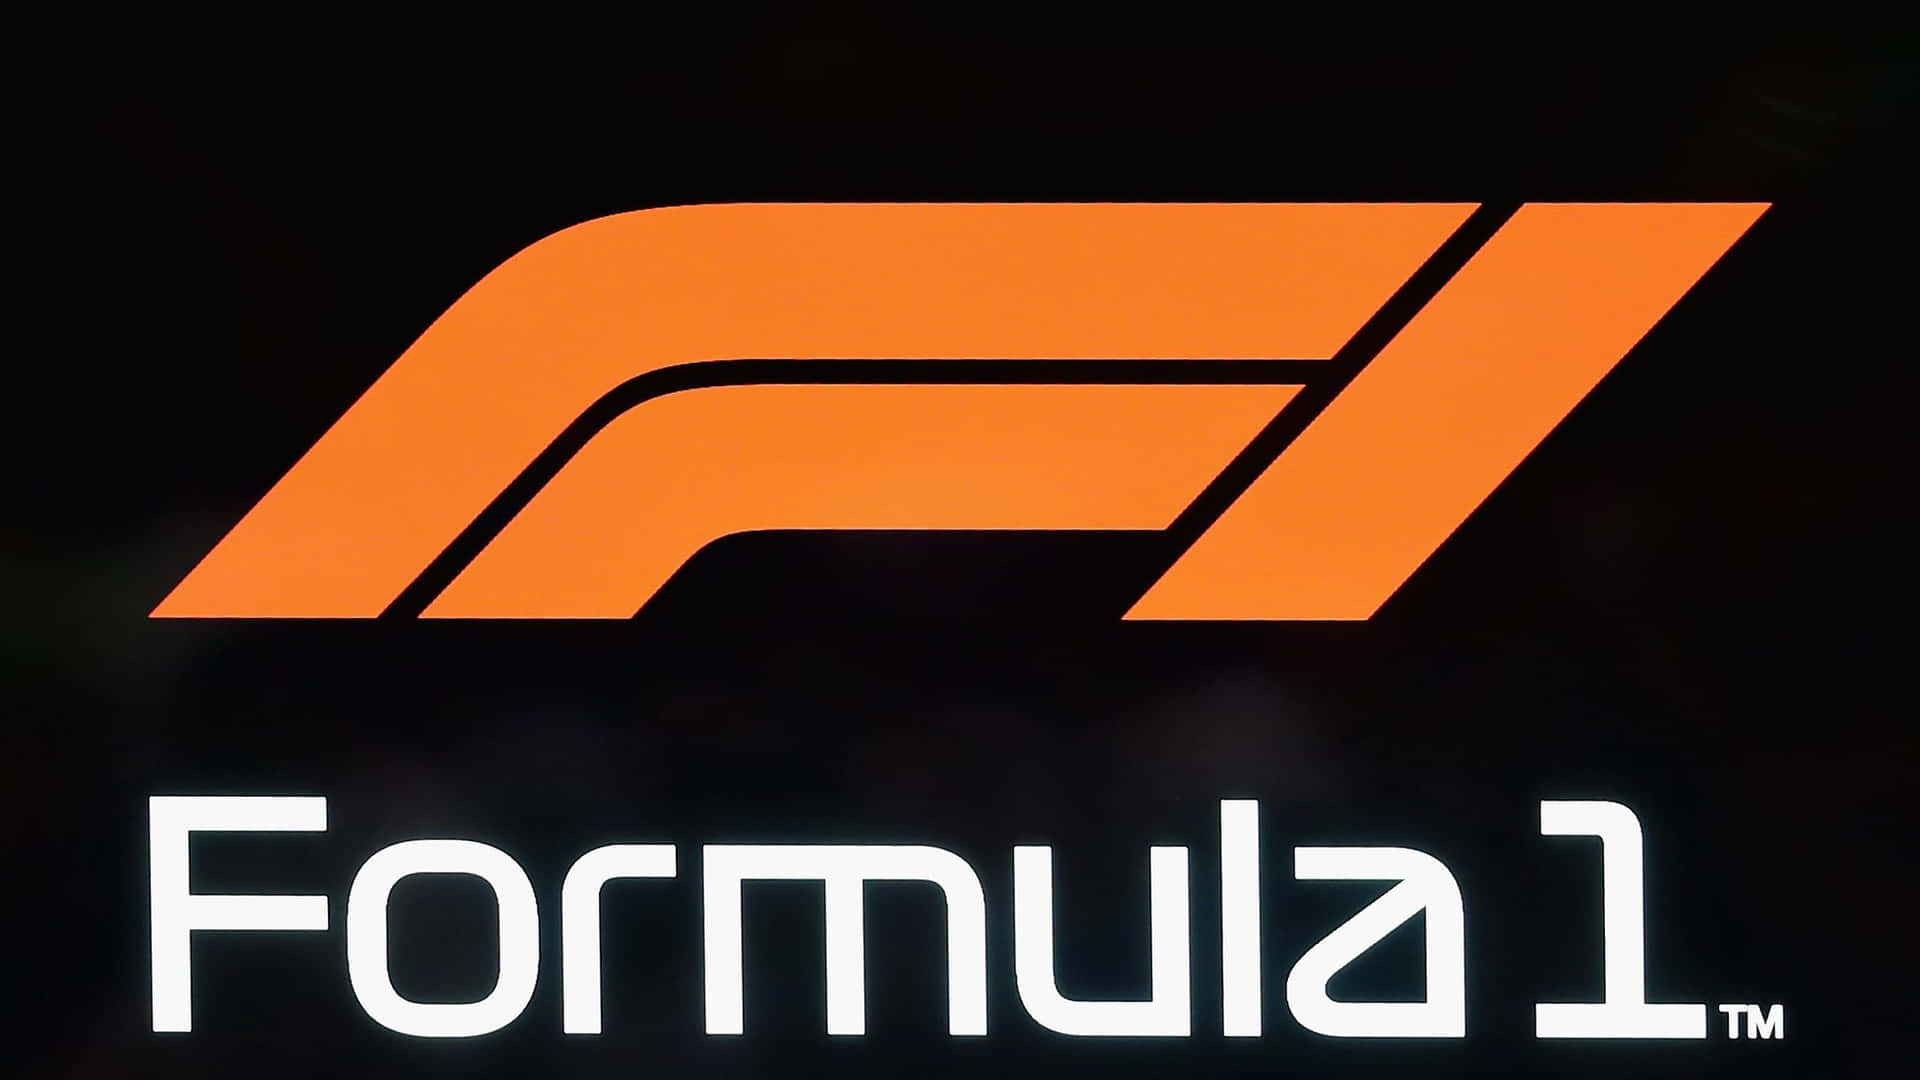 Logodella Formula 1 Con Lettere Arancioni E Nere